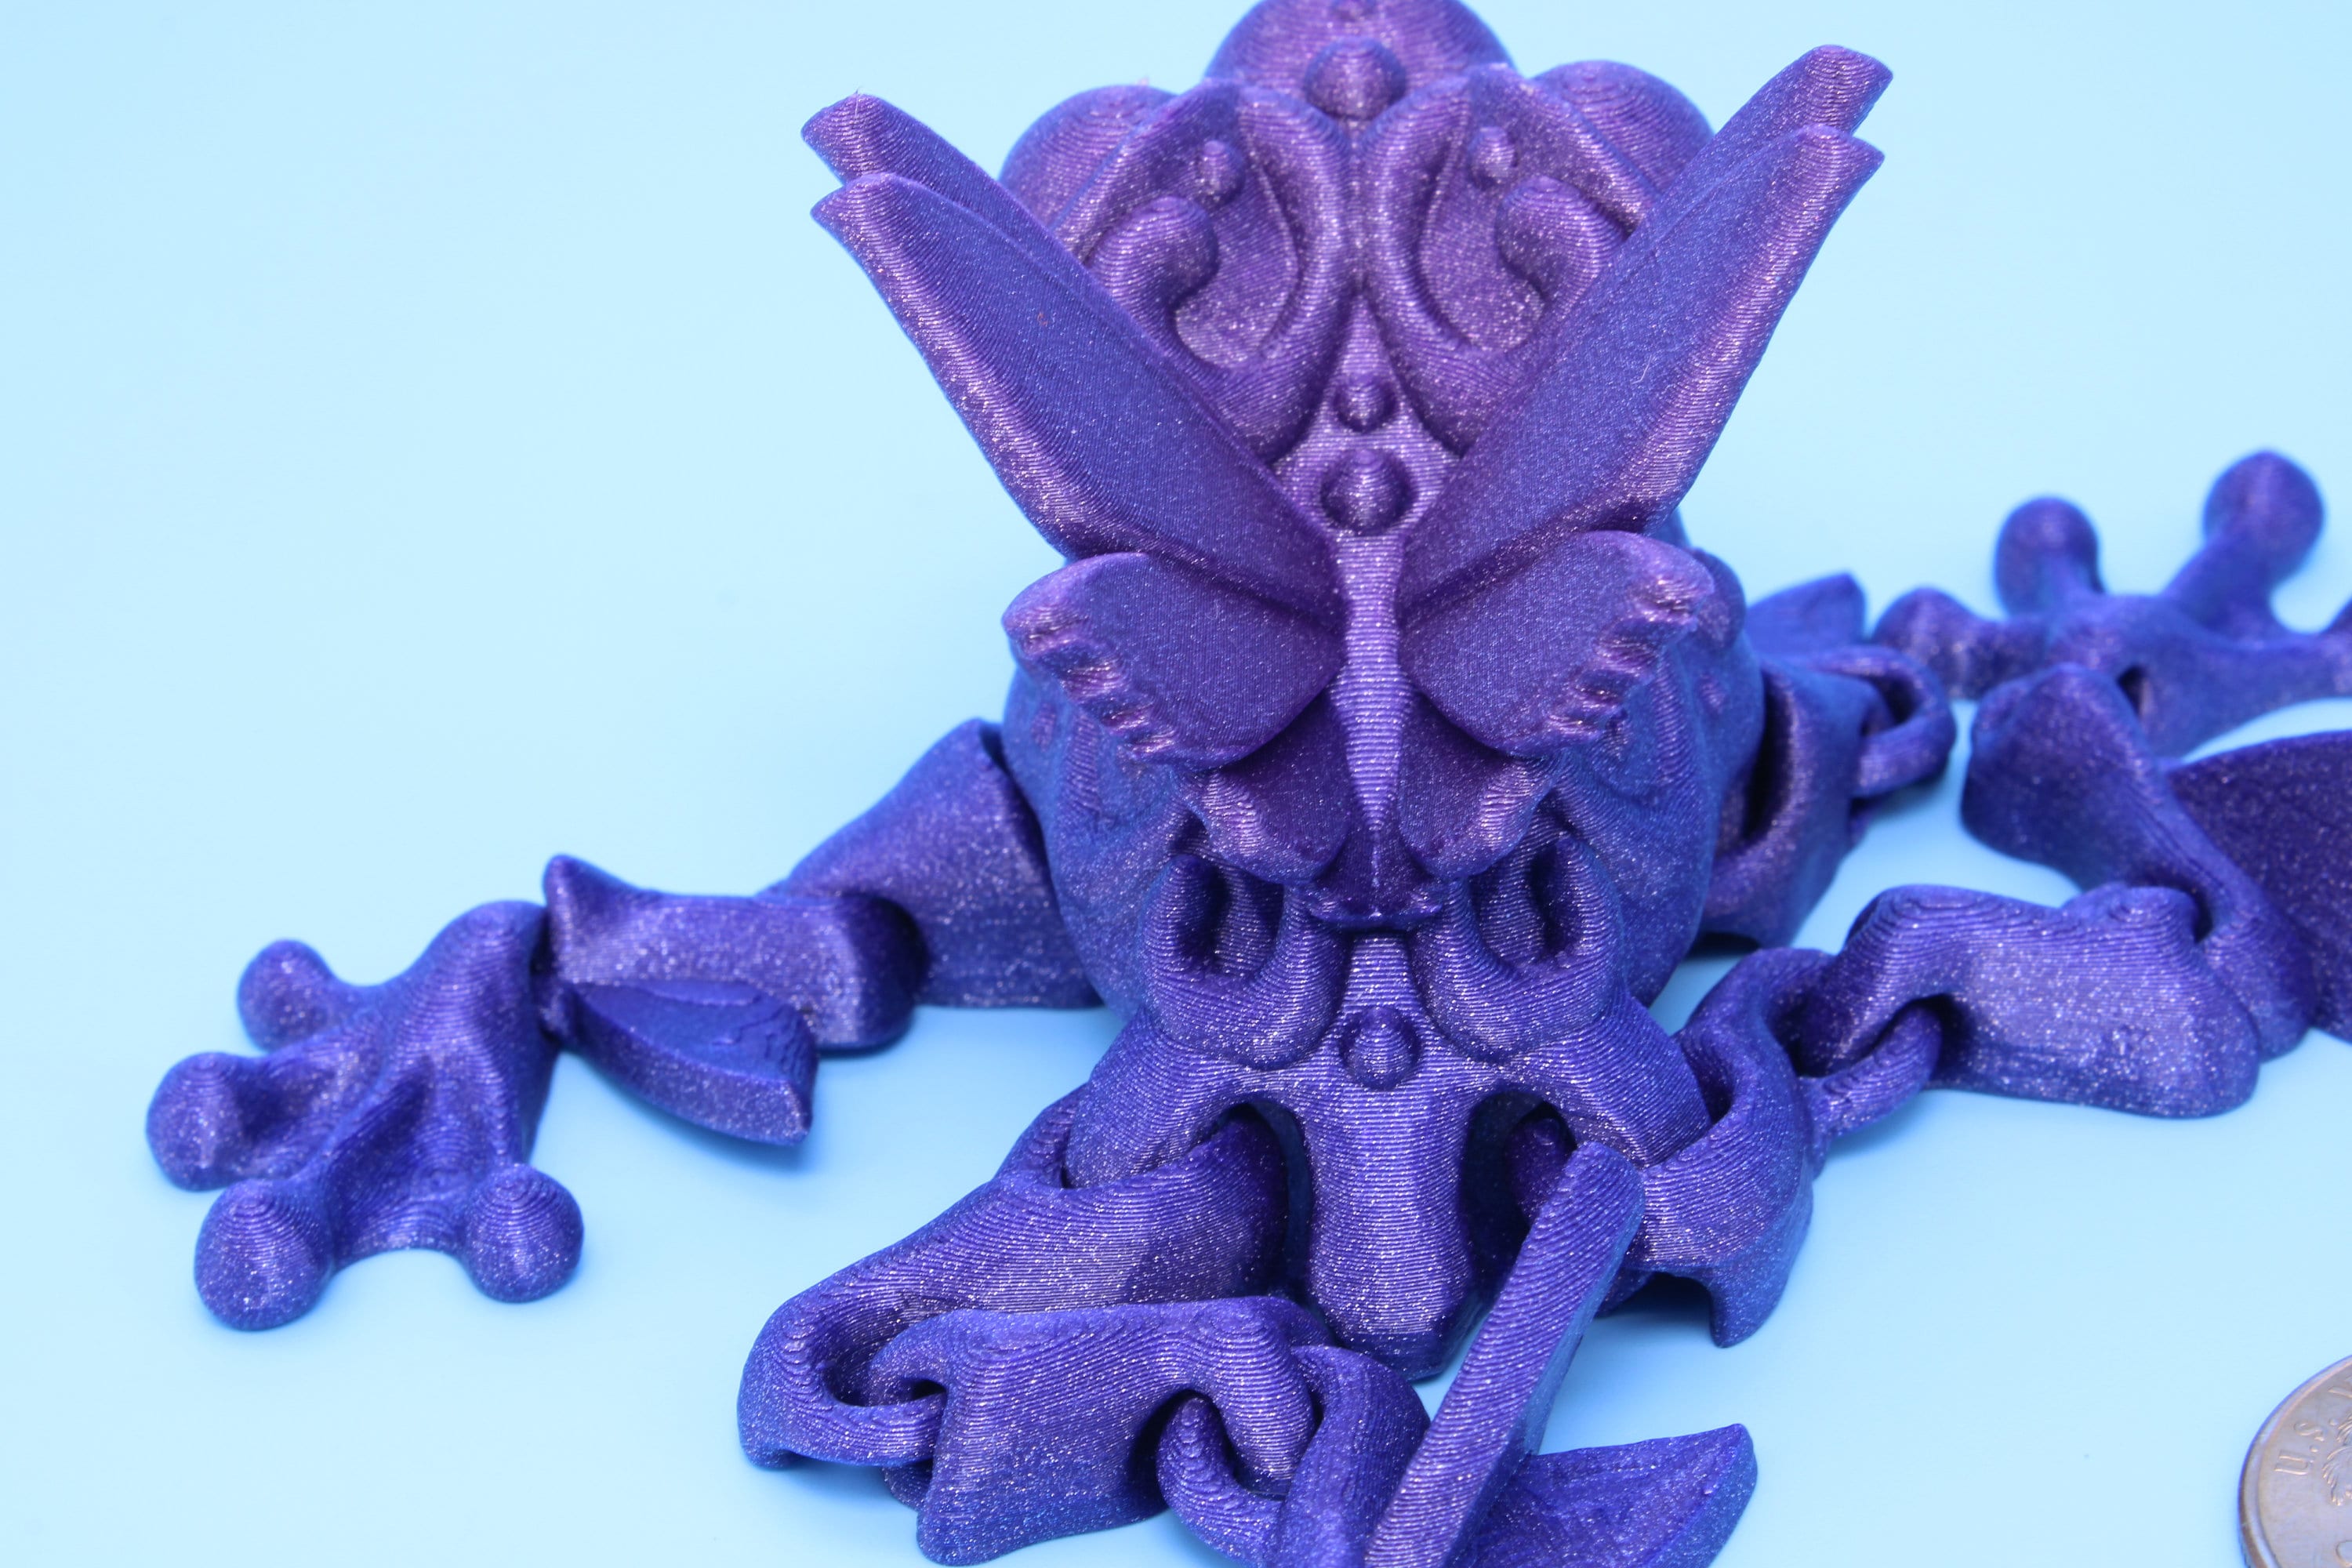 Butterfly Frog- 3D Printed | Flutter Frog | Articulating Frog.